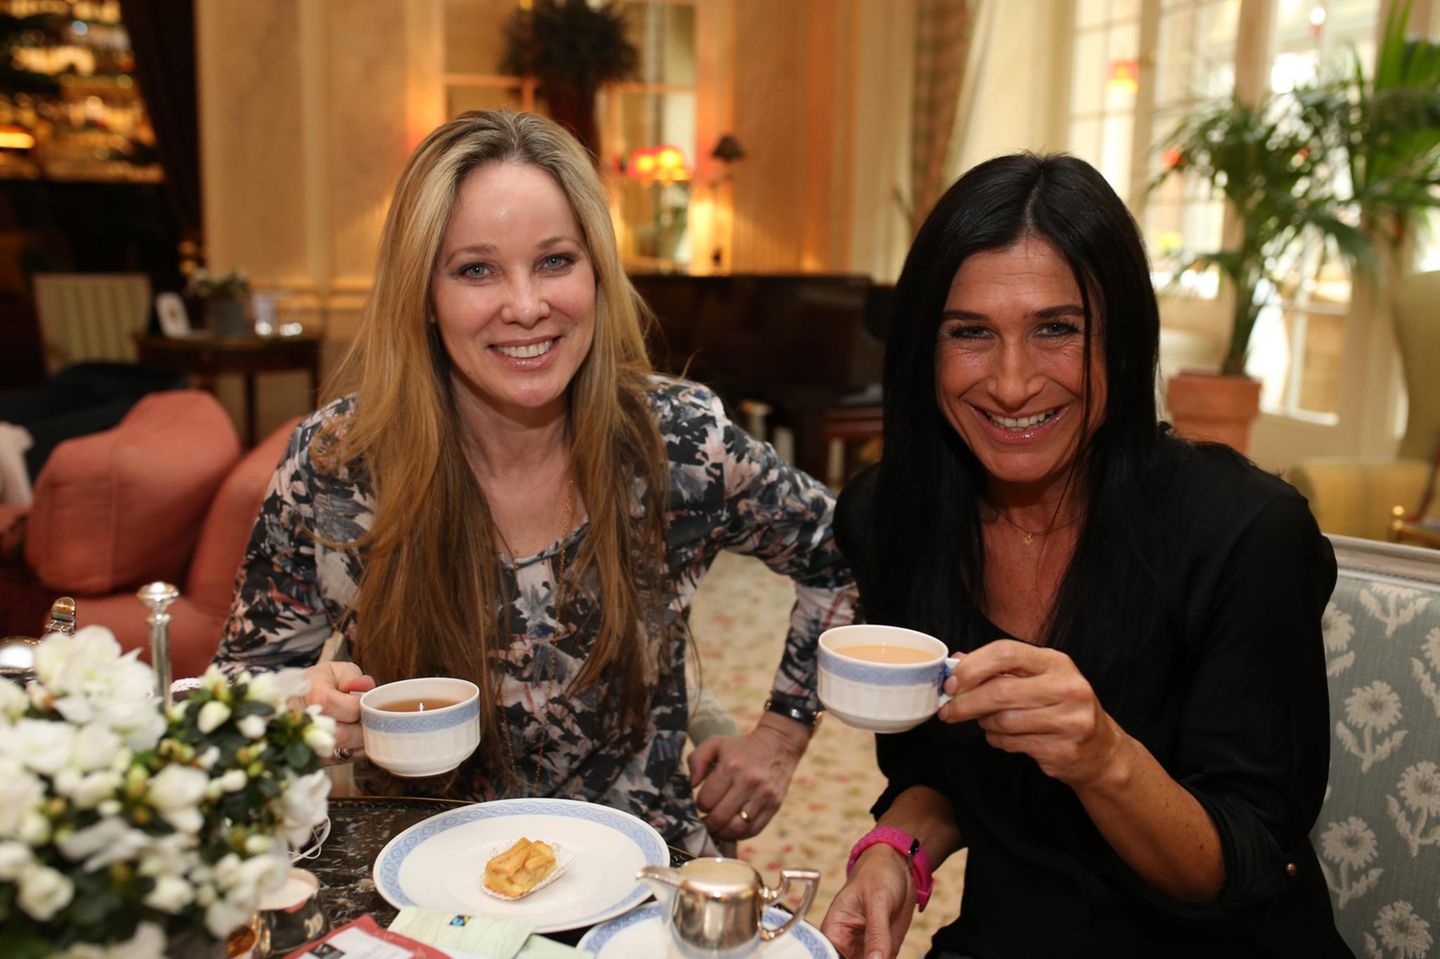 Ann-Kathrin Kramer (Schauspielerin) und ihre Begleitung Silvia Wingenfelder genossen die Tea Time mit köstlichem Tee von SIDROGA